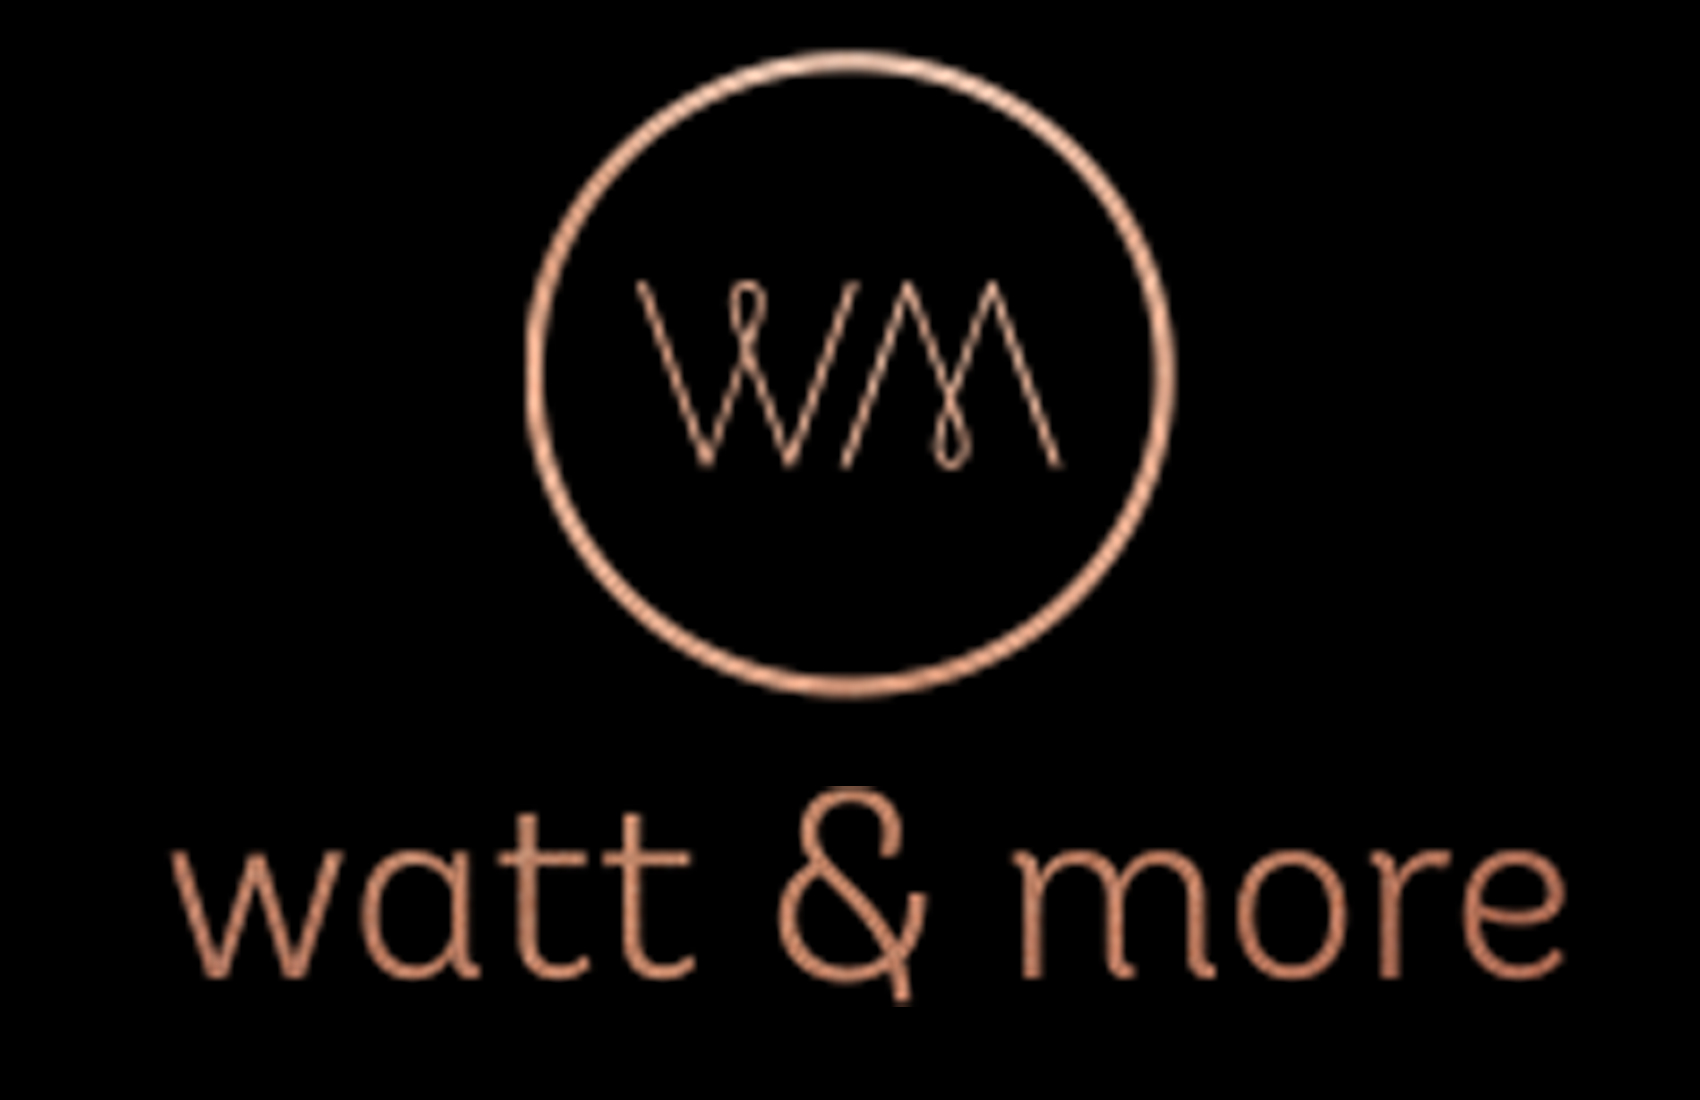 Watt & More